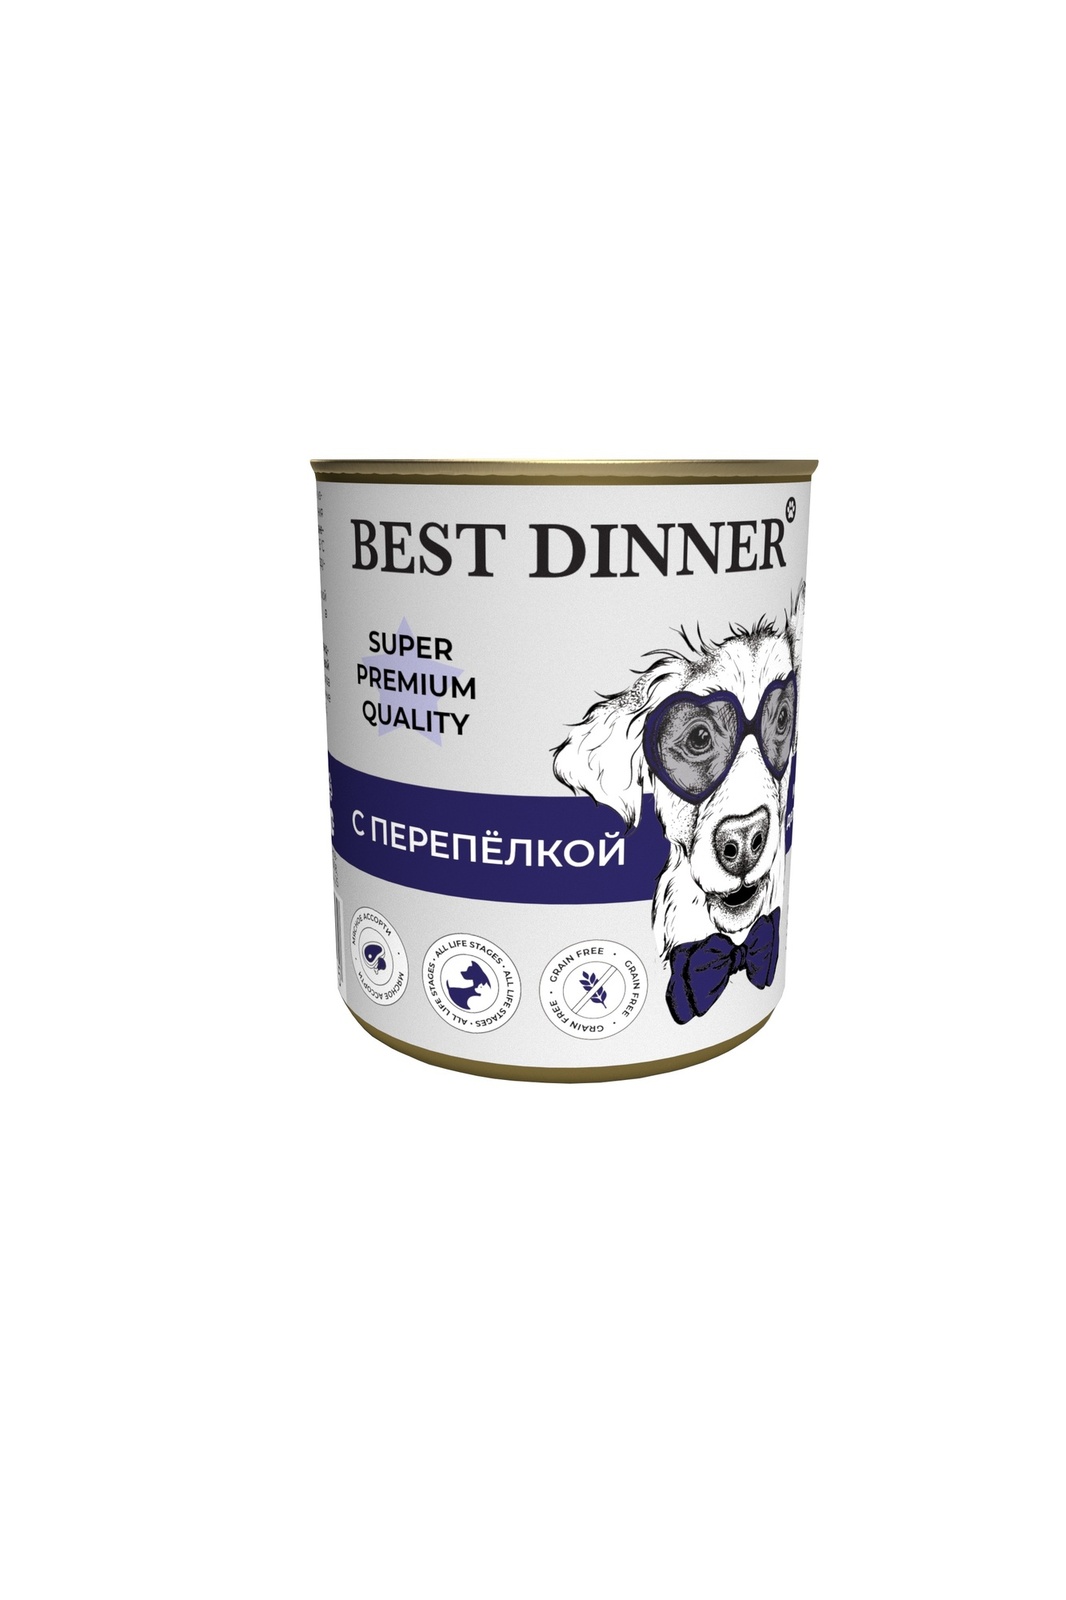 Best Dinner Best Dinner консервы для собак Super Premium С перепелкой (340 г) best dinner best dinner гипоаллергенные консервы с кониной и рисом для собак всех пород 340 г